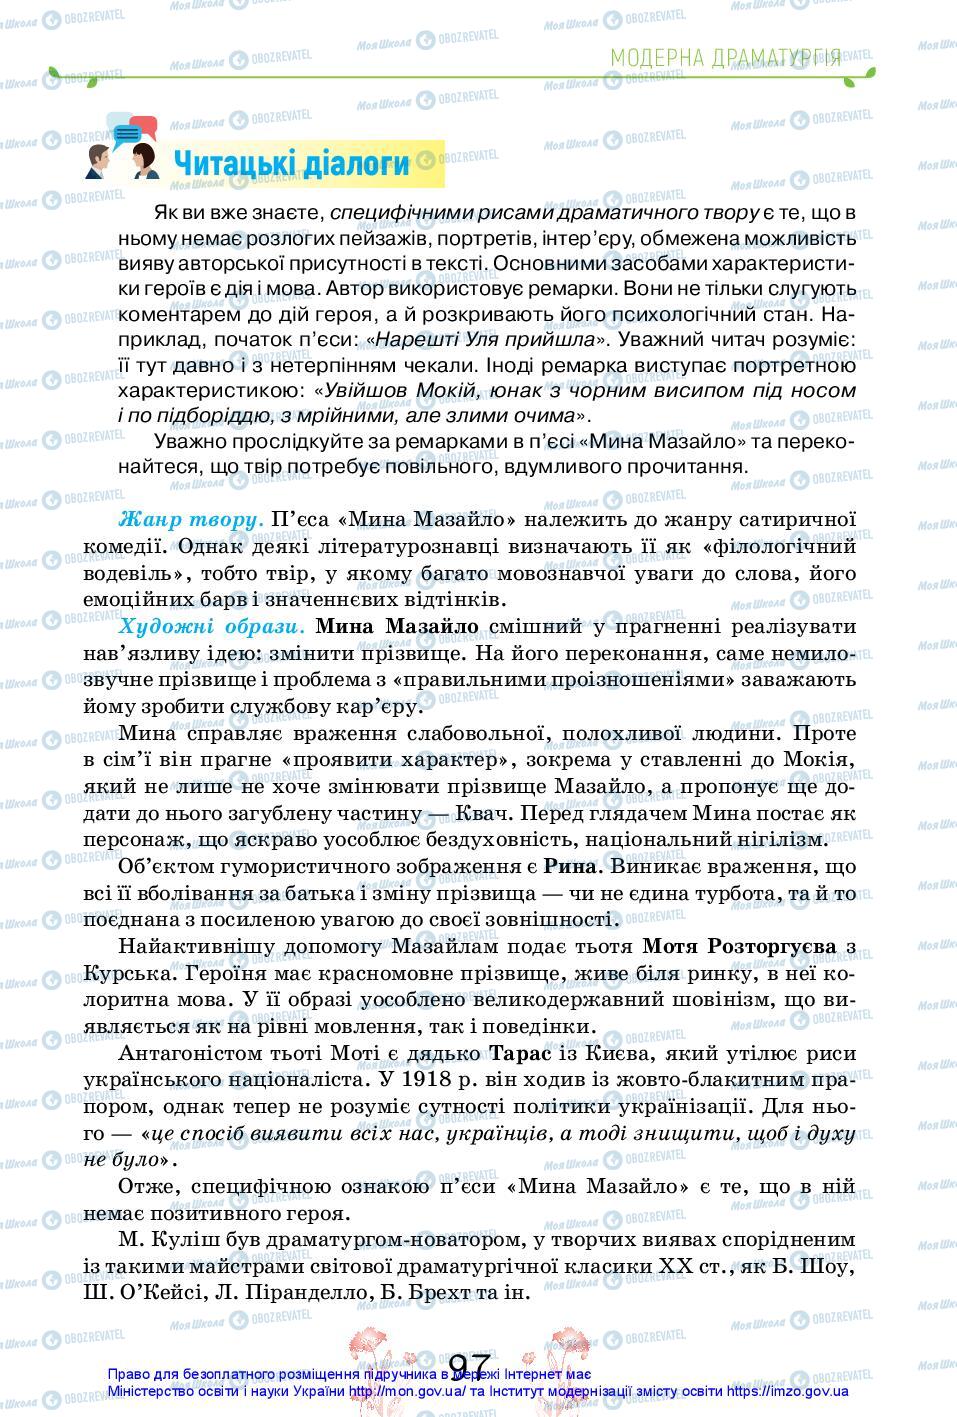 Підручники Українська література 11 клас сторінка 97